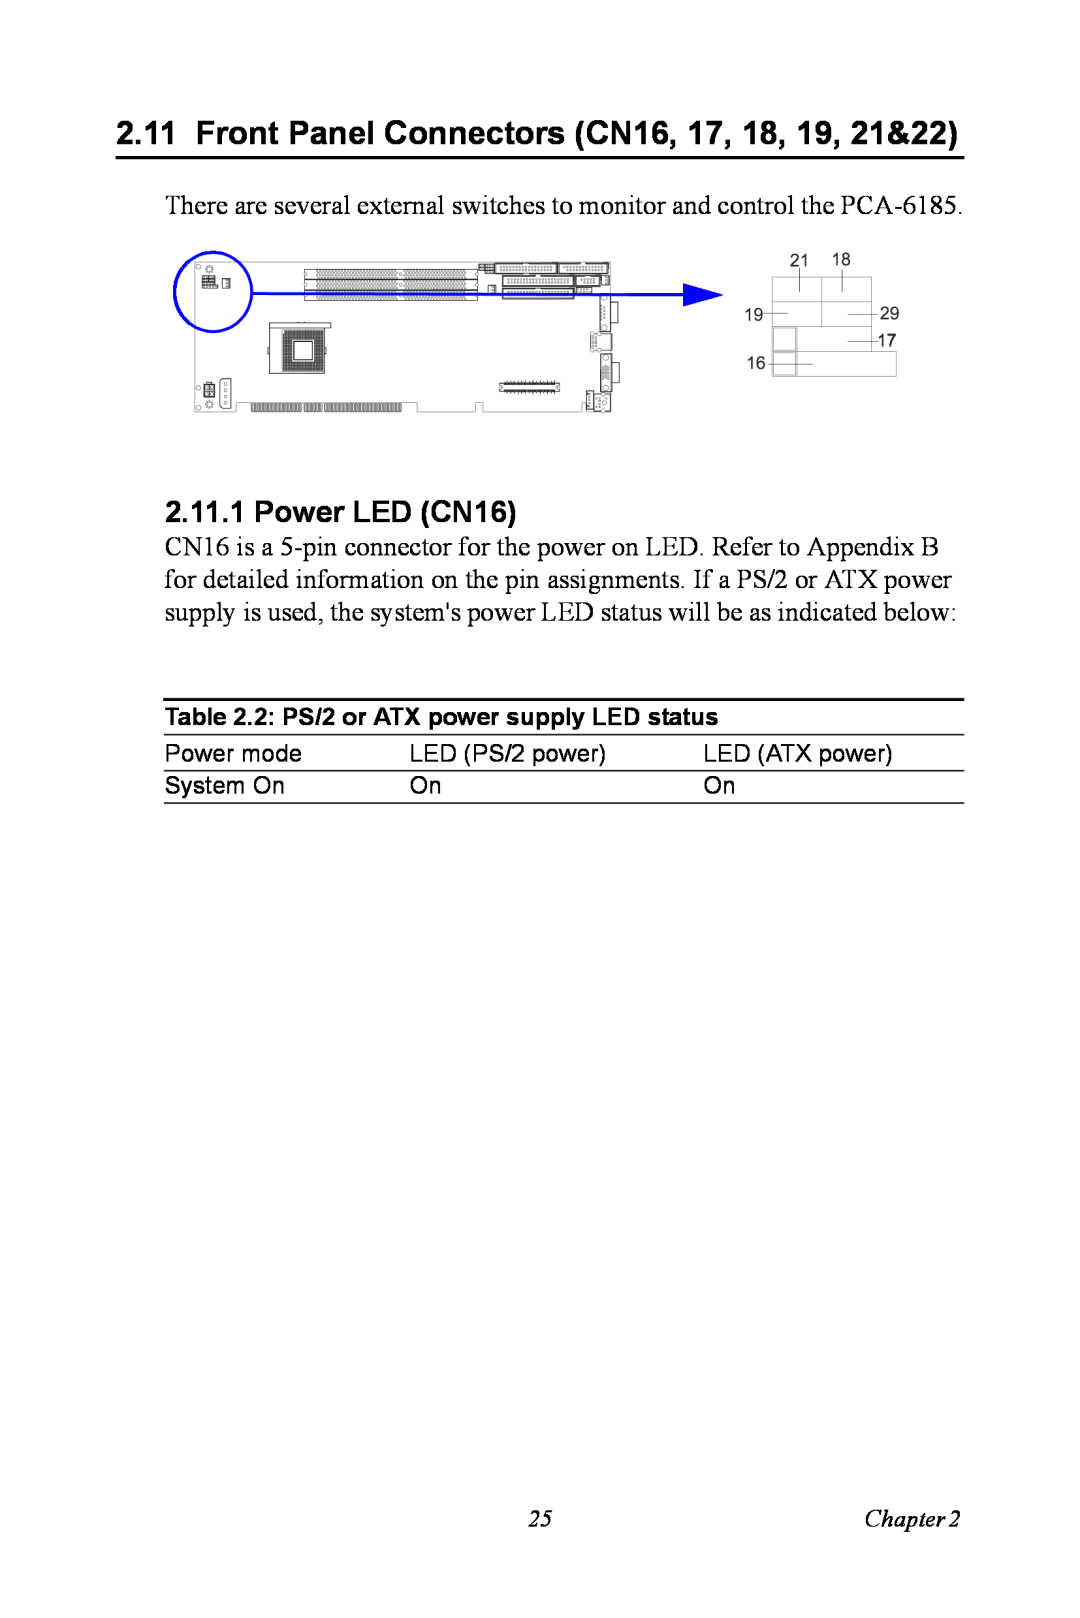 Advantech PCA-6185 user manual Front Panel Connectors CN16, 17, 18, 19, 21&22, Power LED CN16 